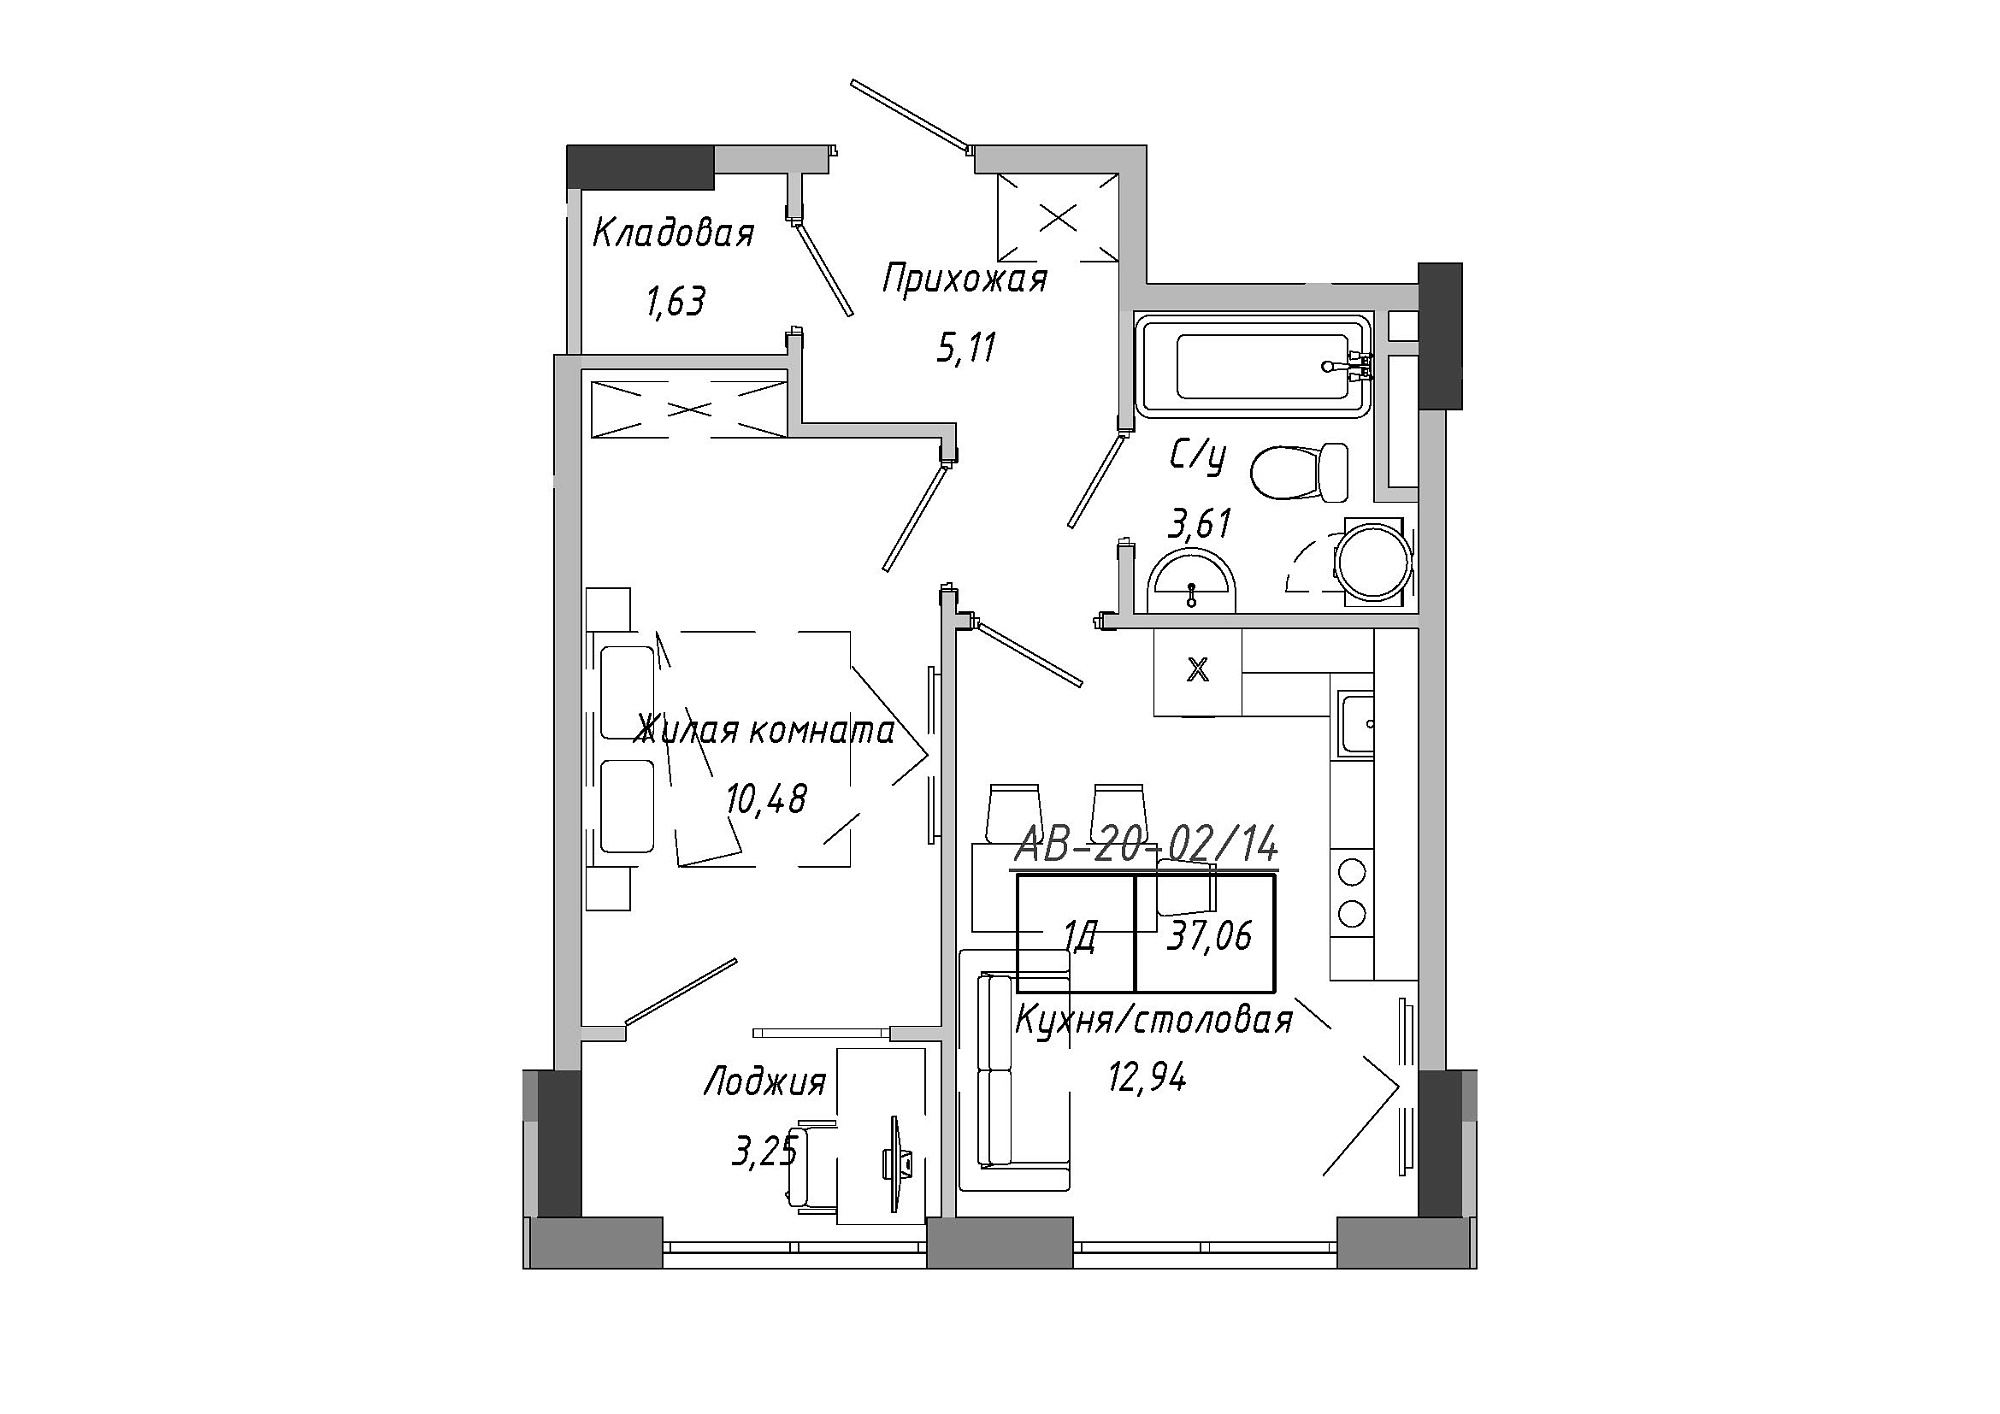 Планировка 1-к квартира площей 36.96м2, AB-20-02/00014.